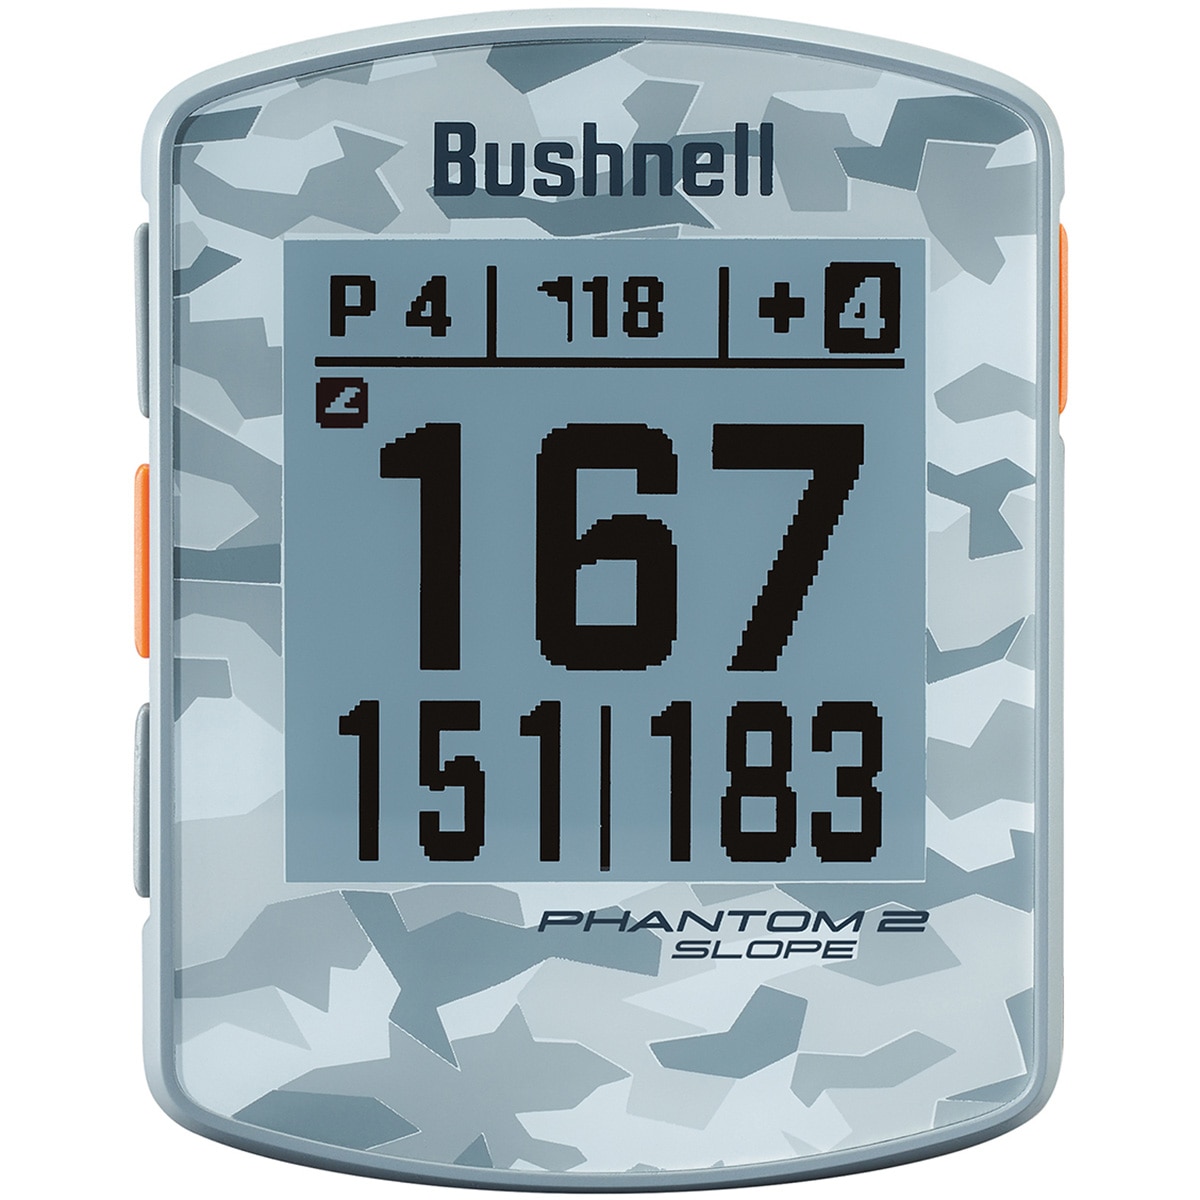 ファントム2 スロープ(距離測定器)|Bushnell(ブッシュネル)の通販 